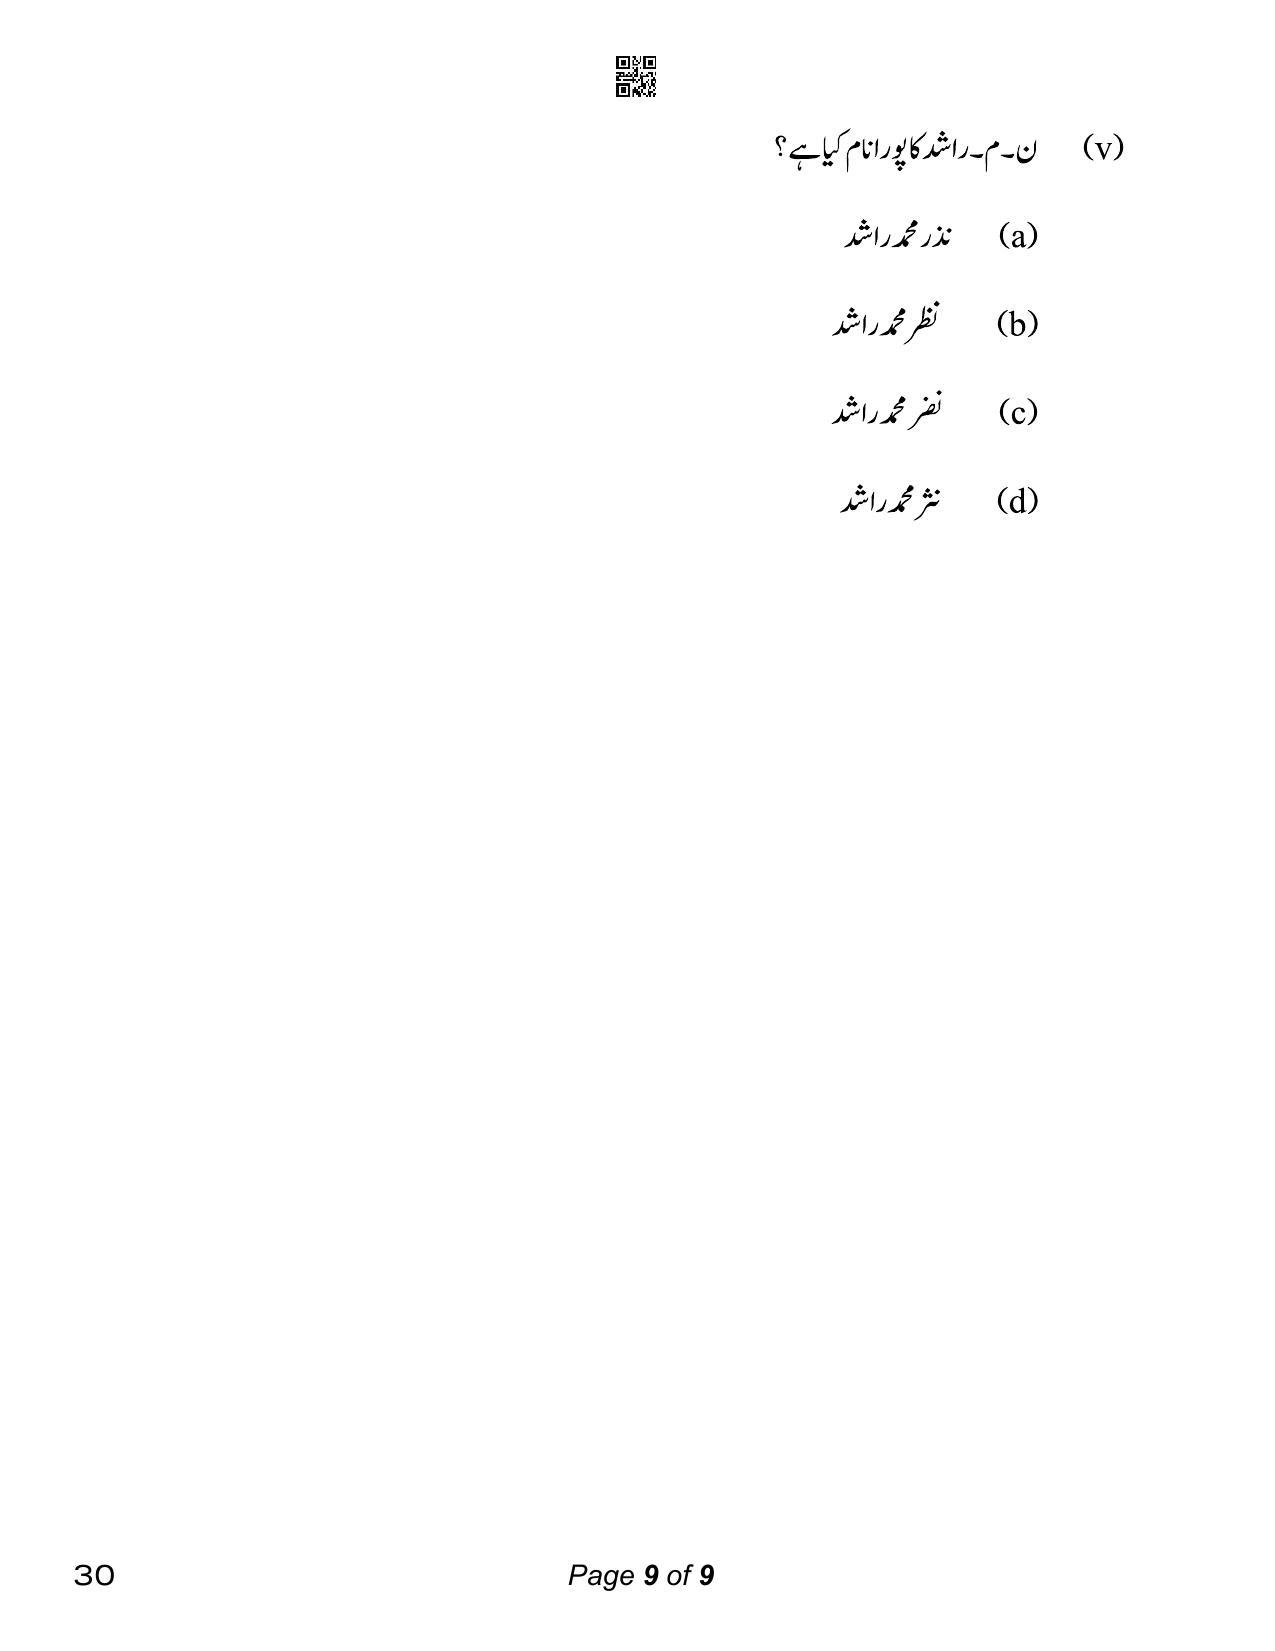 CBSE Class 12 Urdu Elective (Compartment) 2023 Question Paper - Page 9